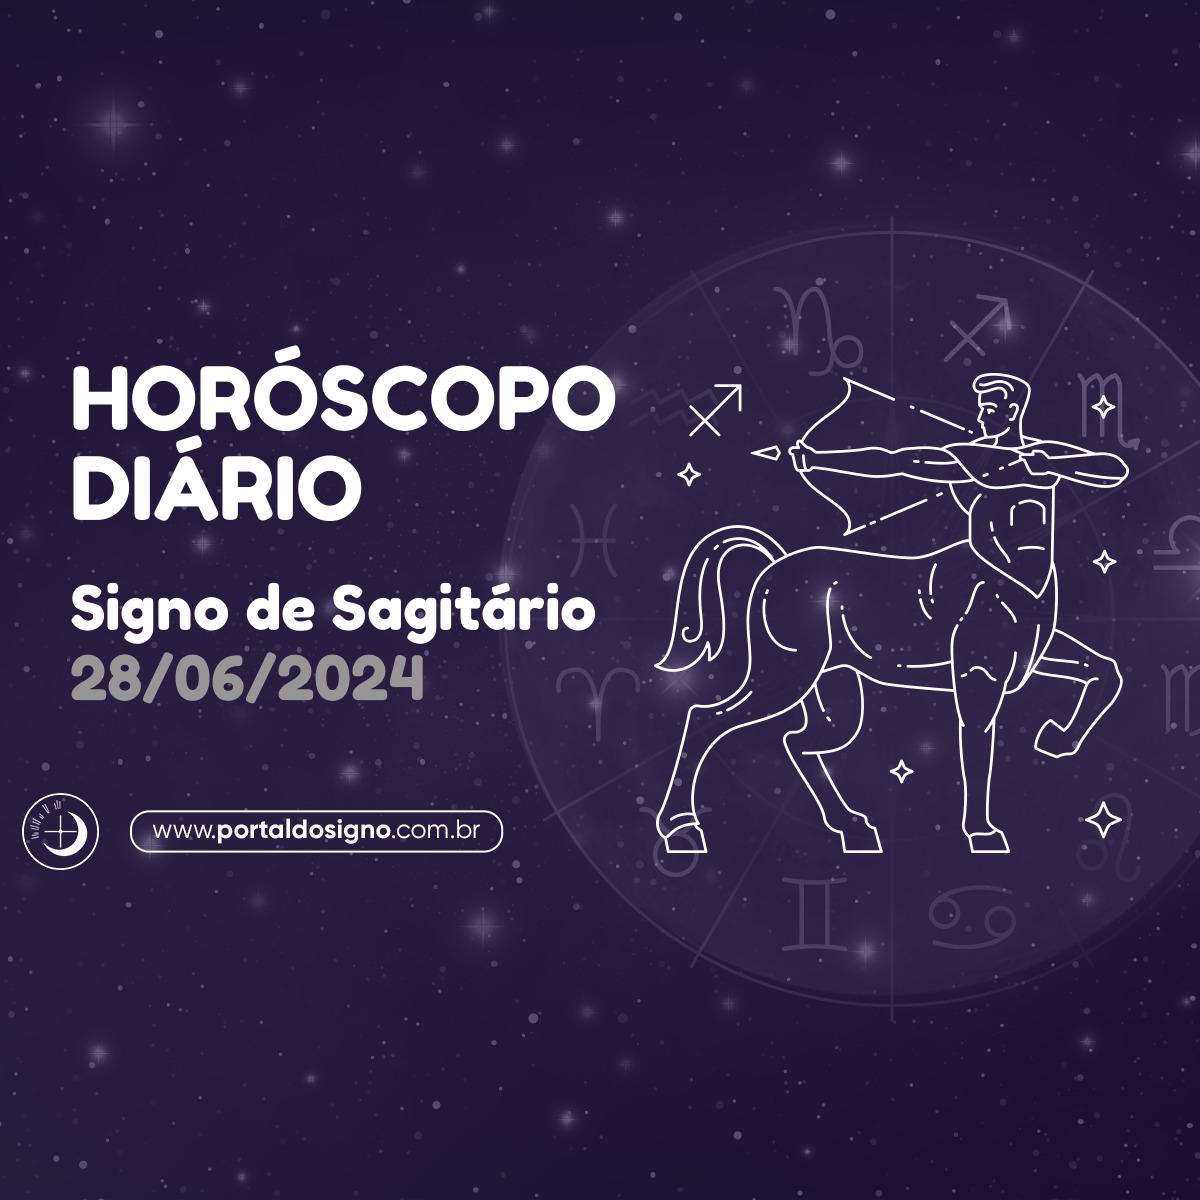 Horóscopo diário para Sagitário em 28/06/2024